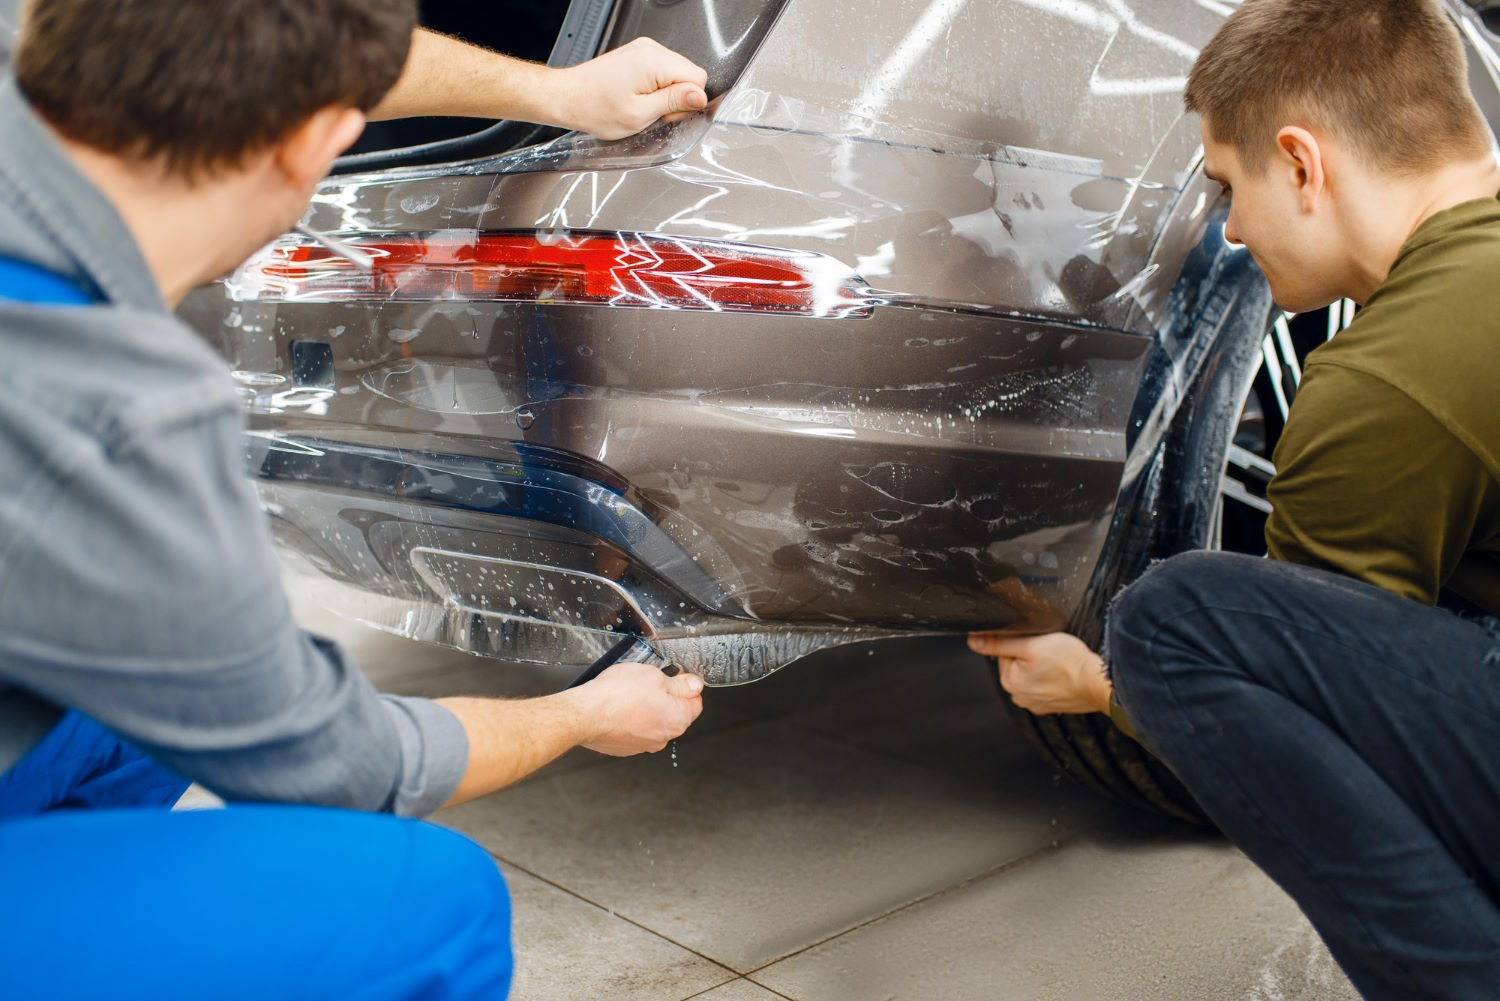 Folia ochronna PPF – doskonała ochrona lakieru samochodowego przed uszkodzeniami